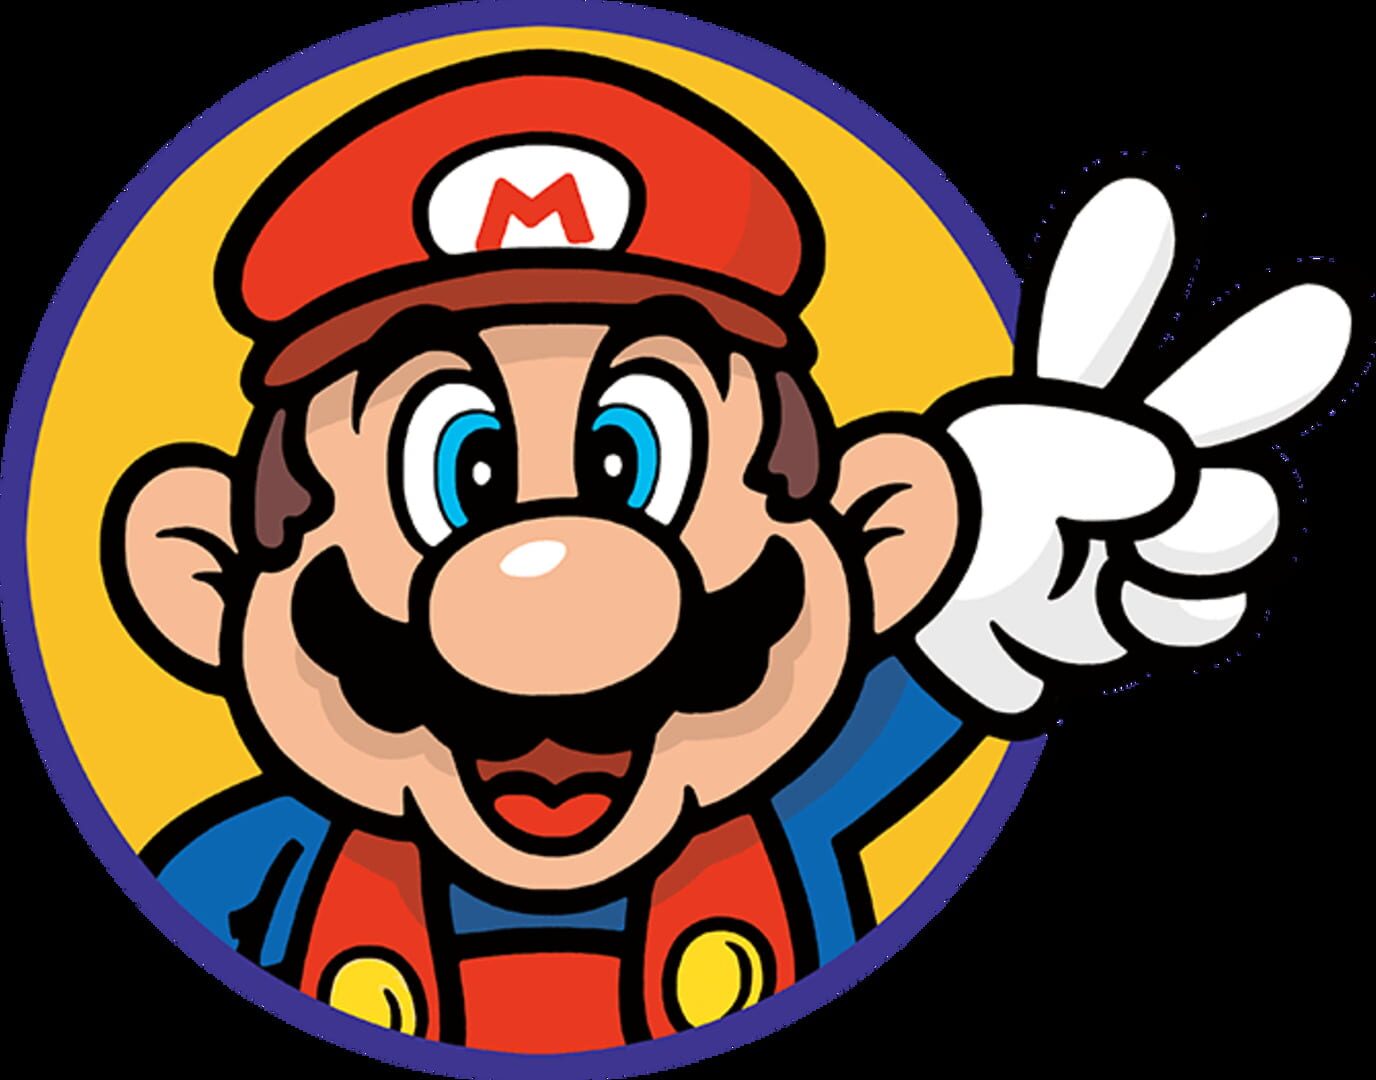 Arte - Super Mario Bros.: The Lost Levels